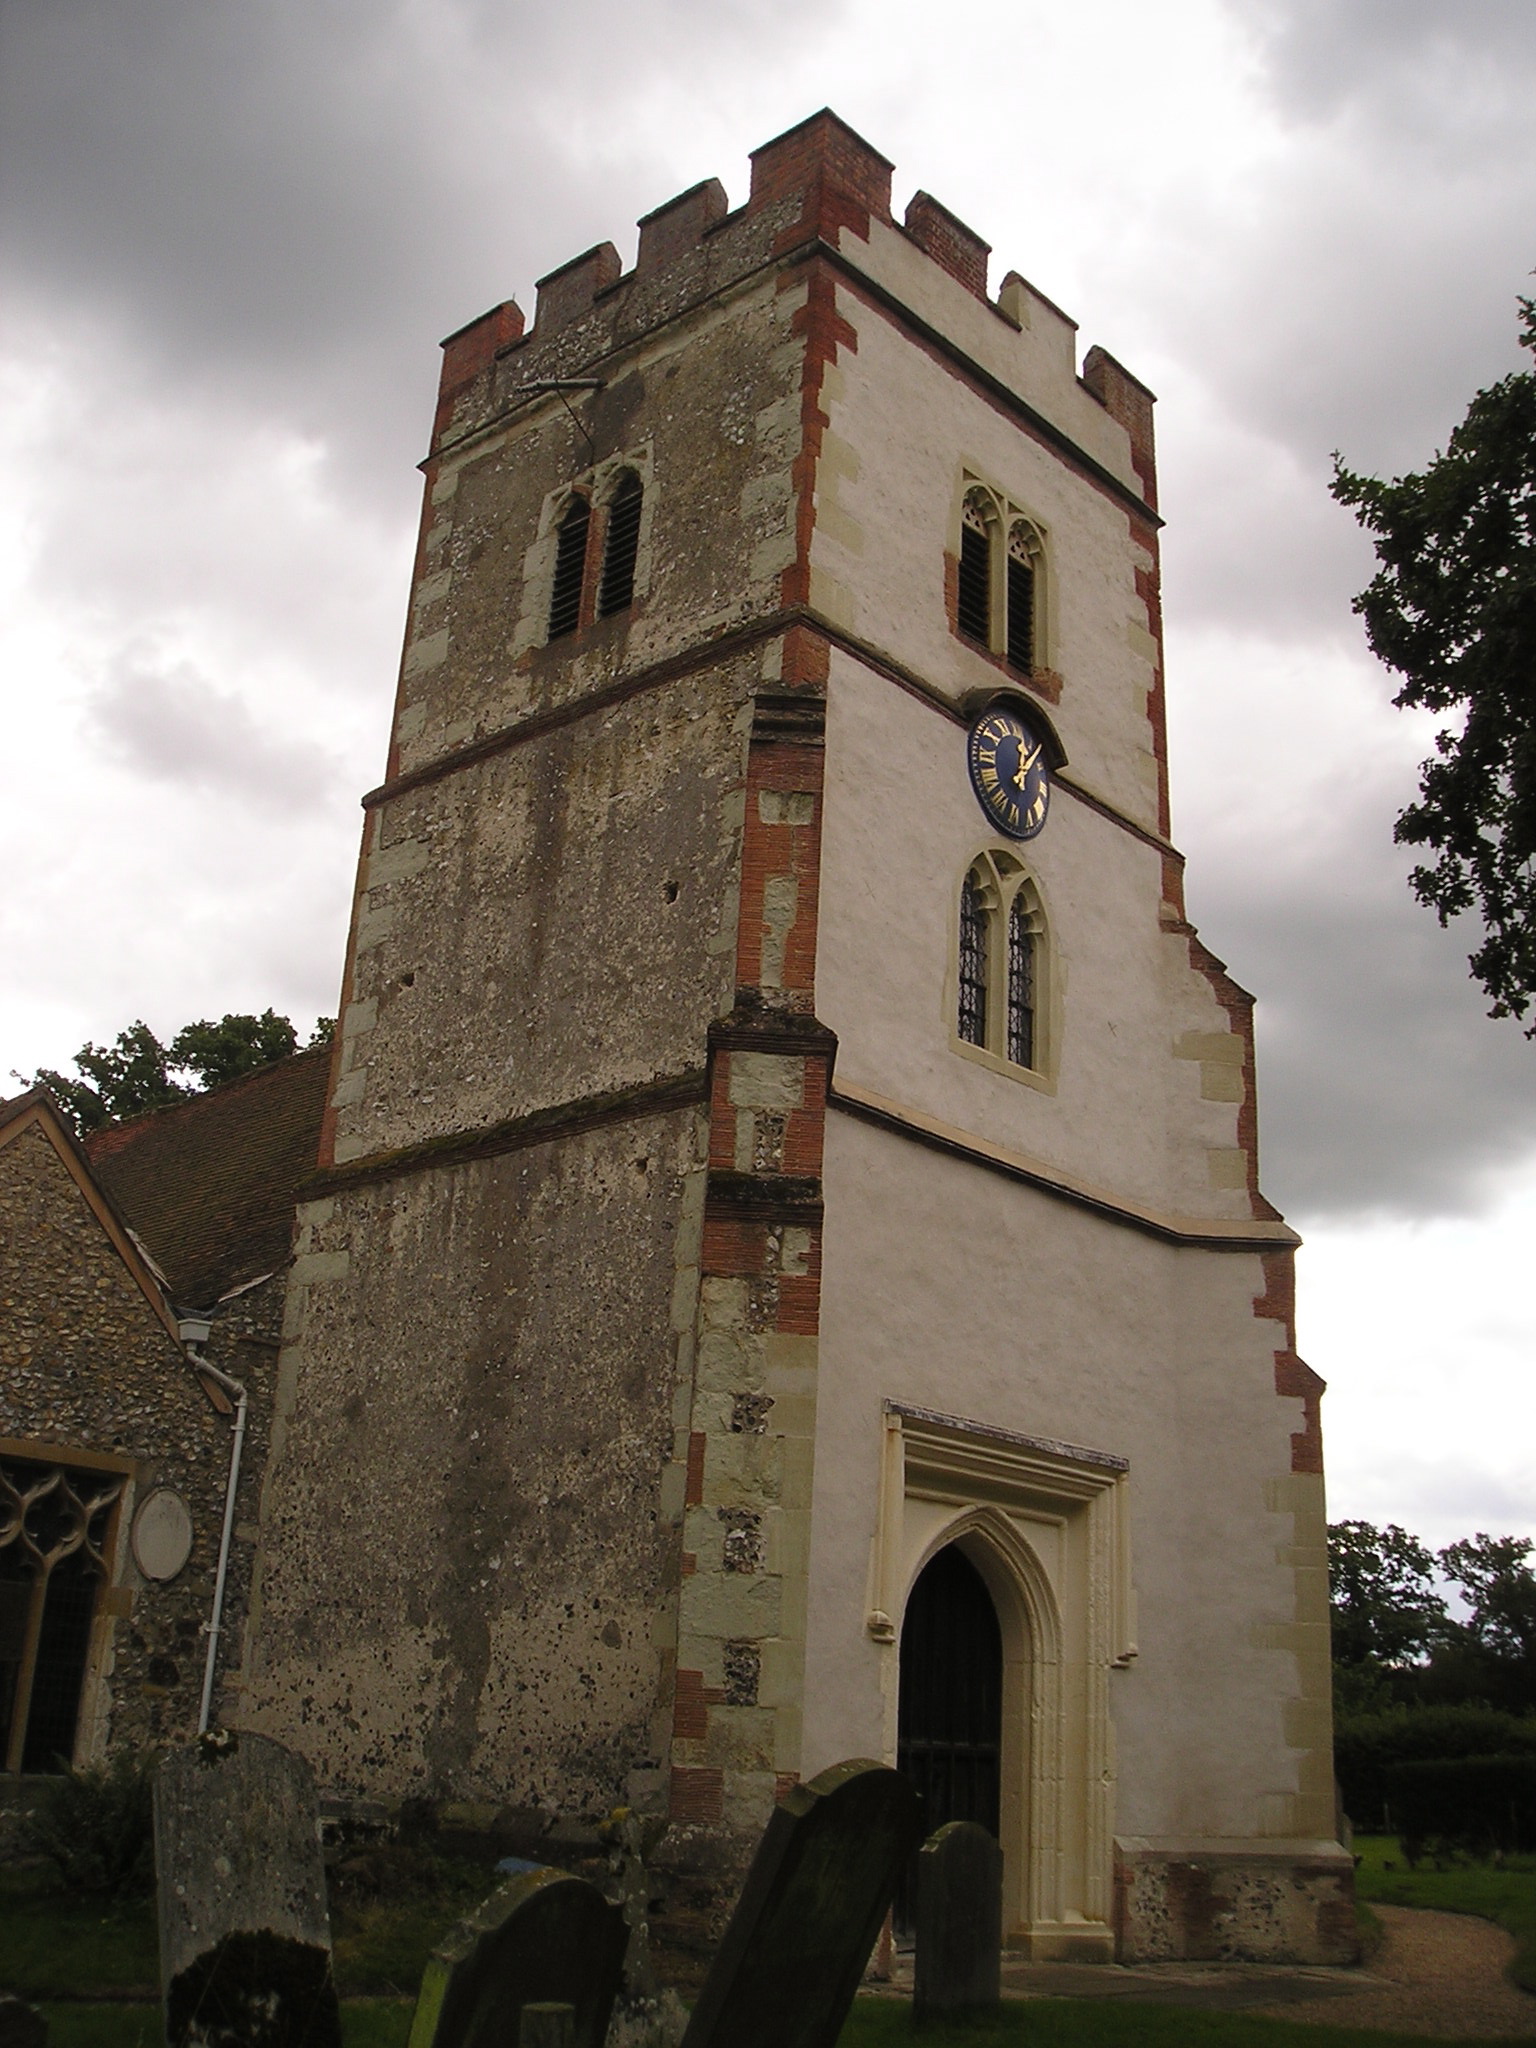 Ockham church tower between render projects.